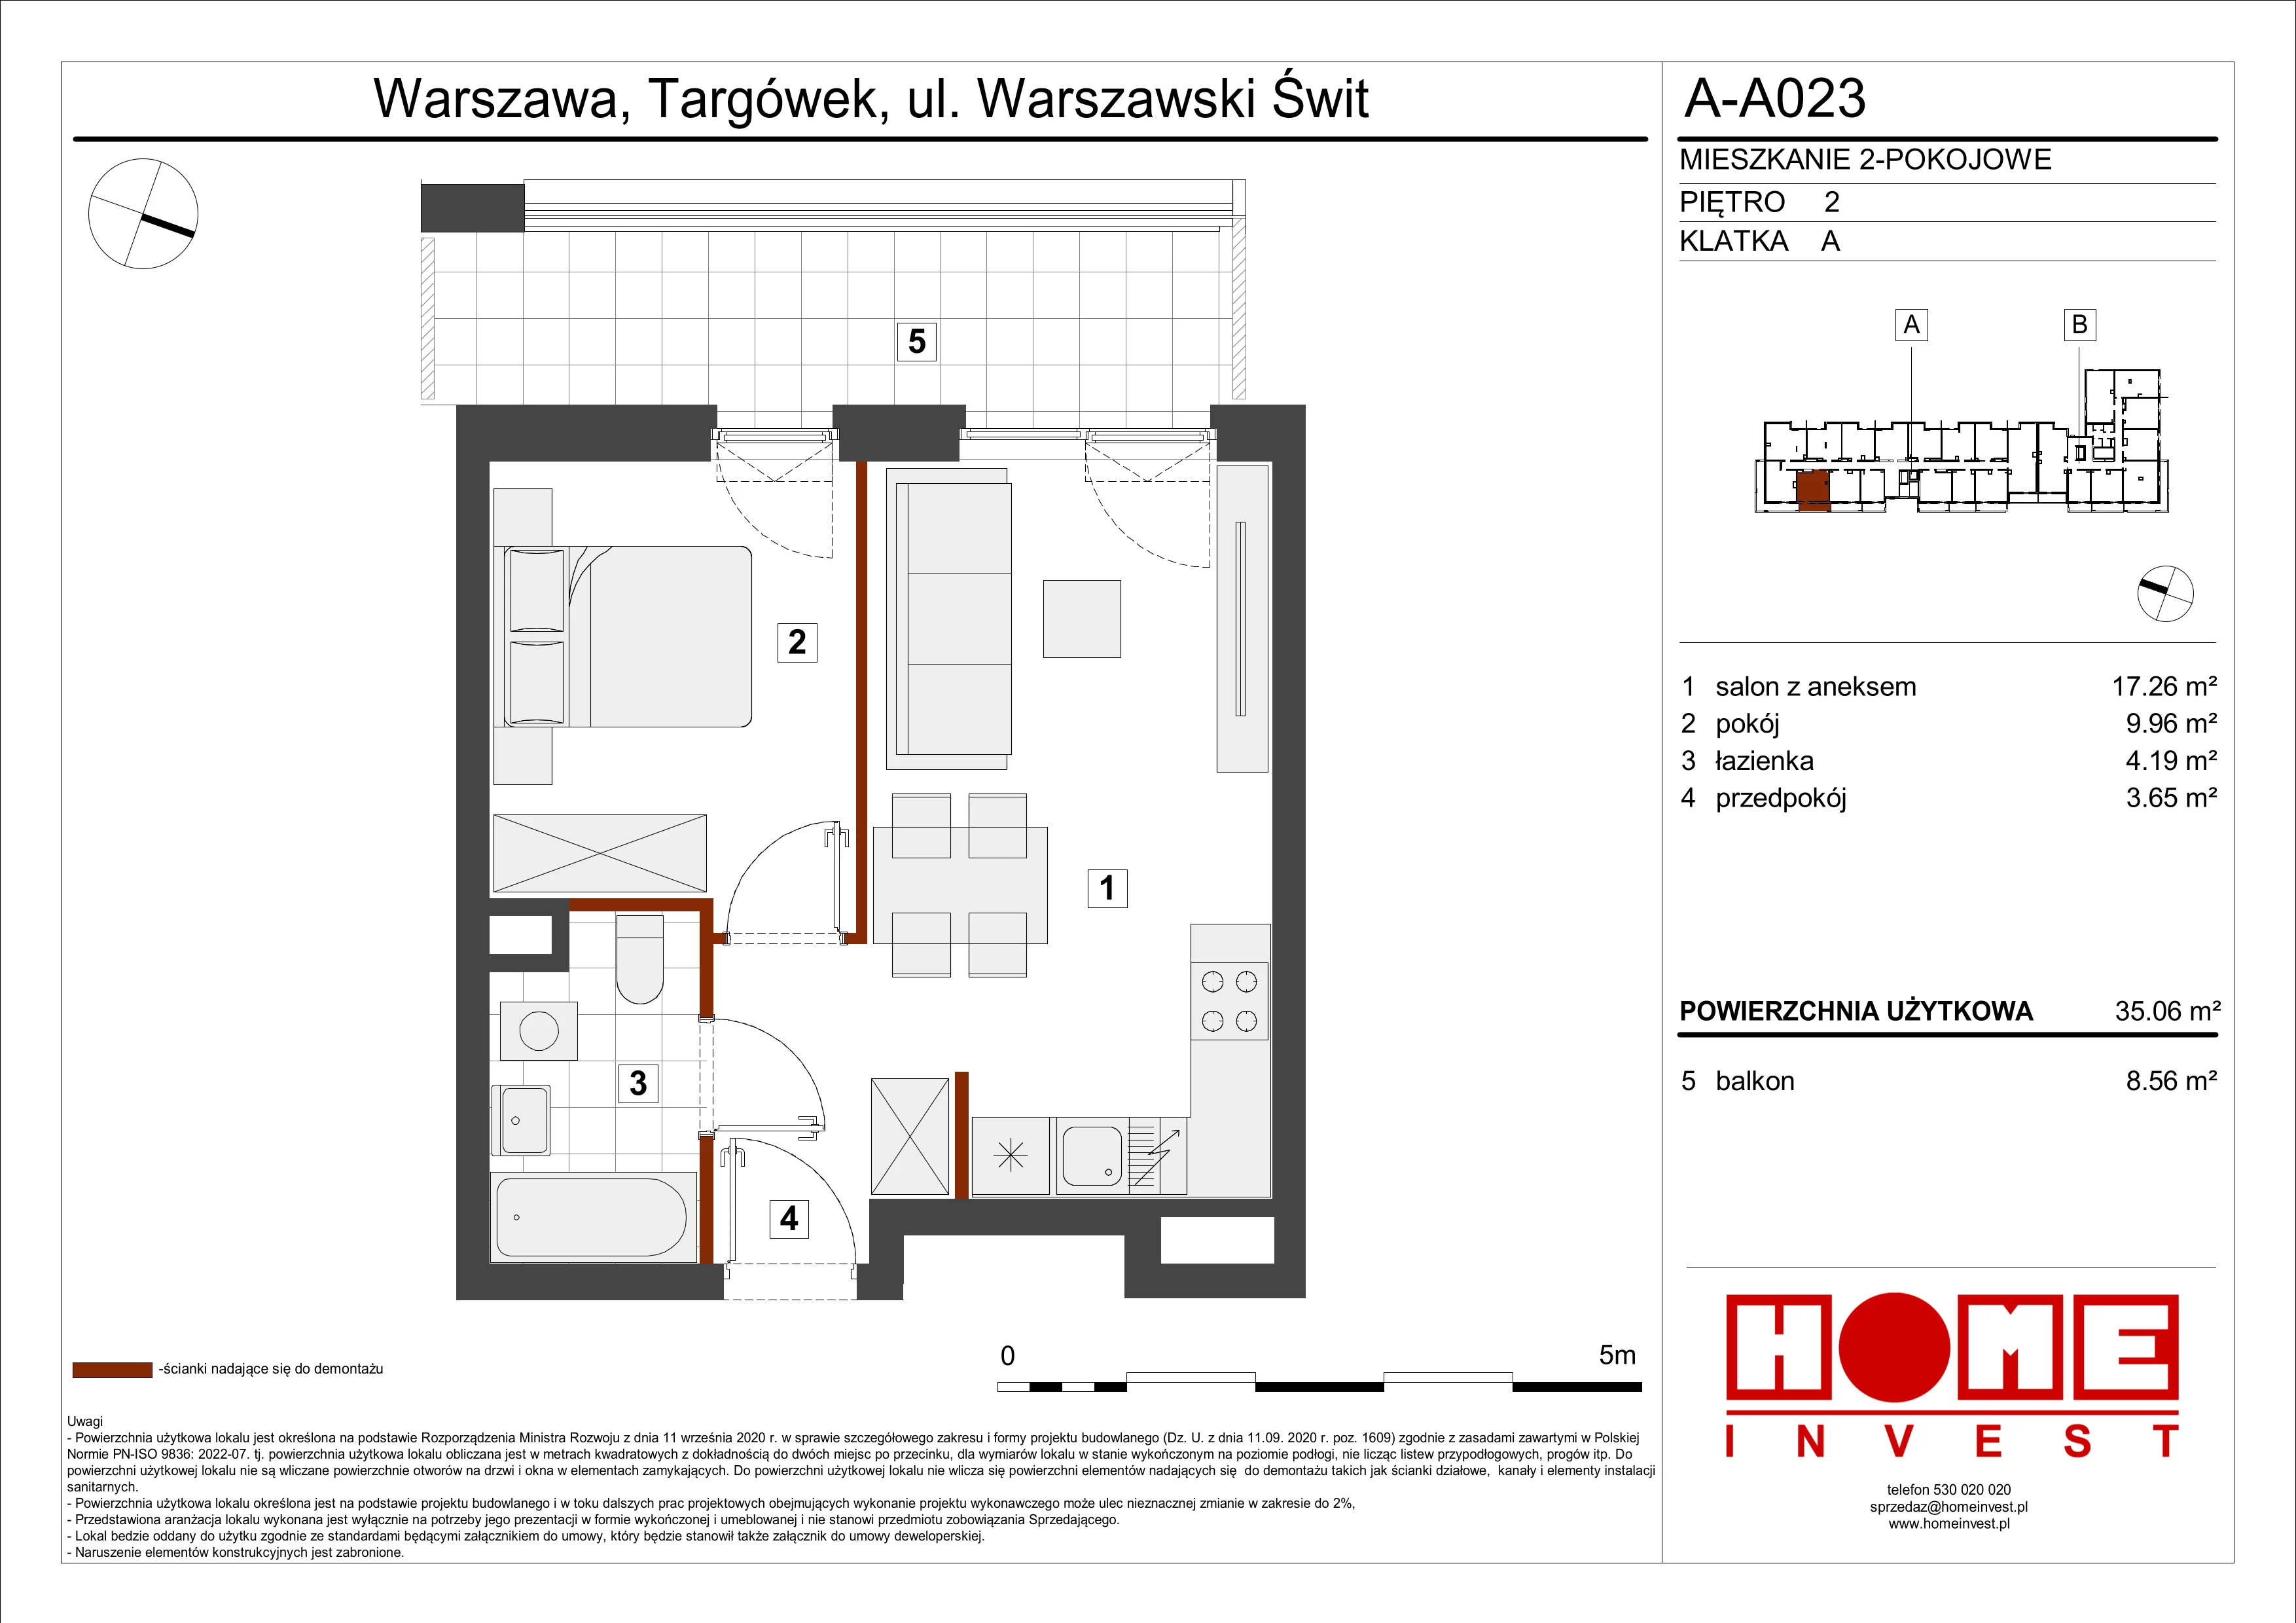 Mieszkanie 35,06 m², piętro 2, oferta nr A-A023, Warszawski Świt, Warszawa, Targówek, Bródno, ul. Warszawski Świt 5